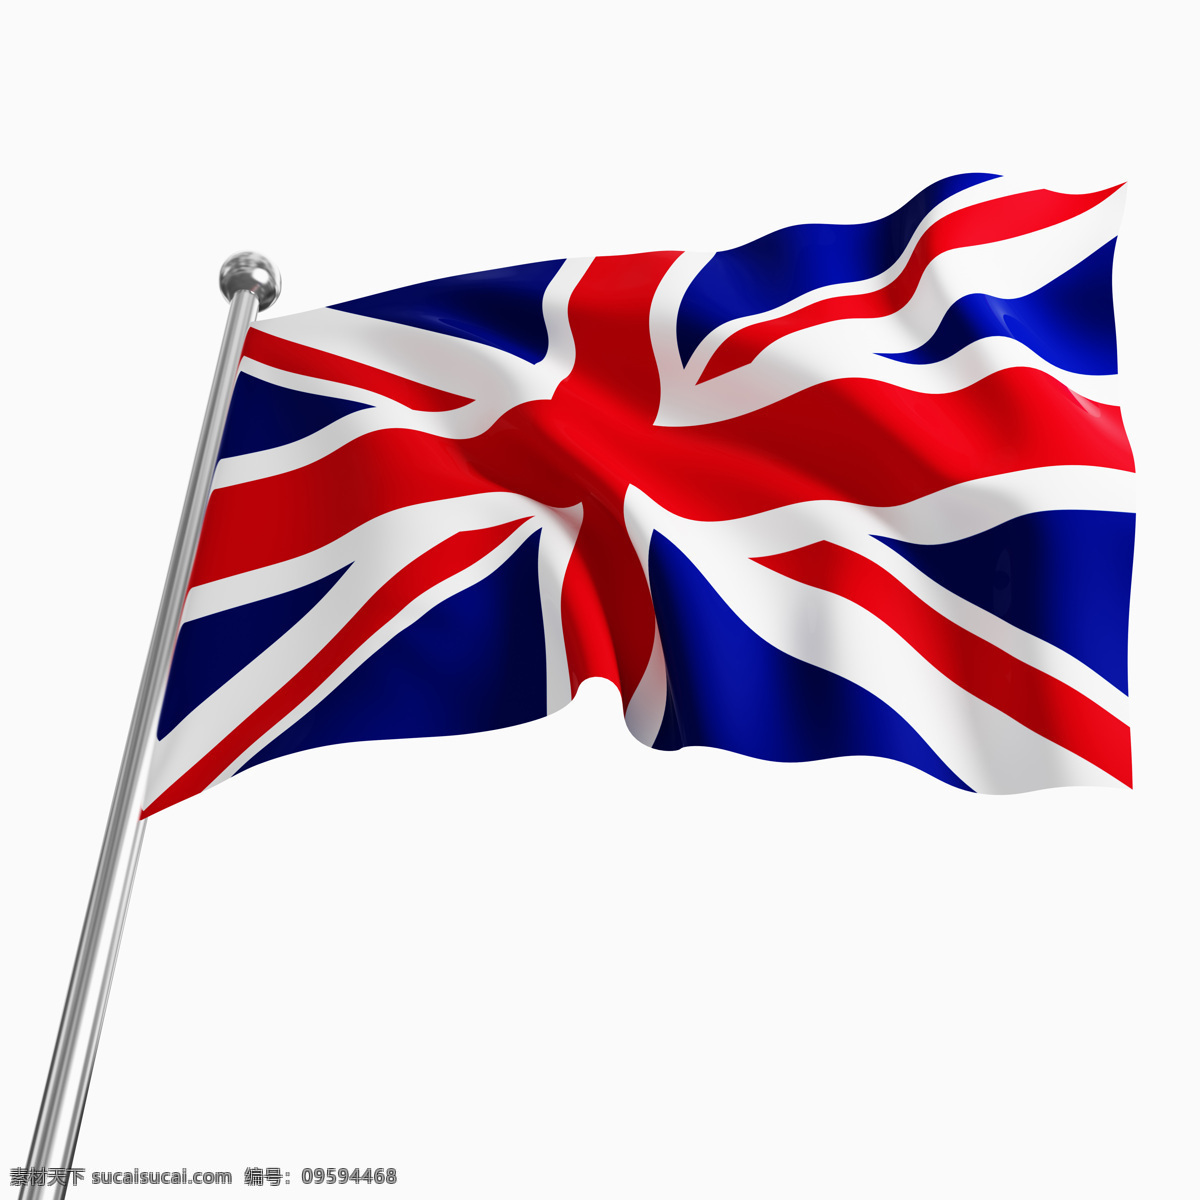 欧美经典 伦敦 欧美风格 英国主题 英国元素 英国特色图片 英国国旗 其他类别 生活百科 白色